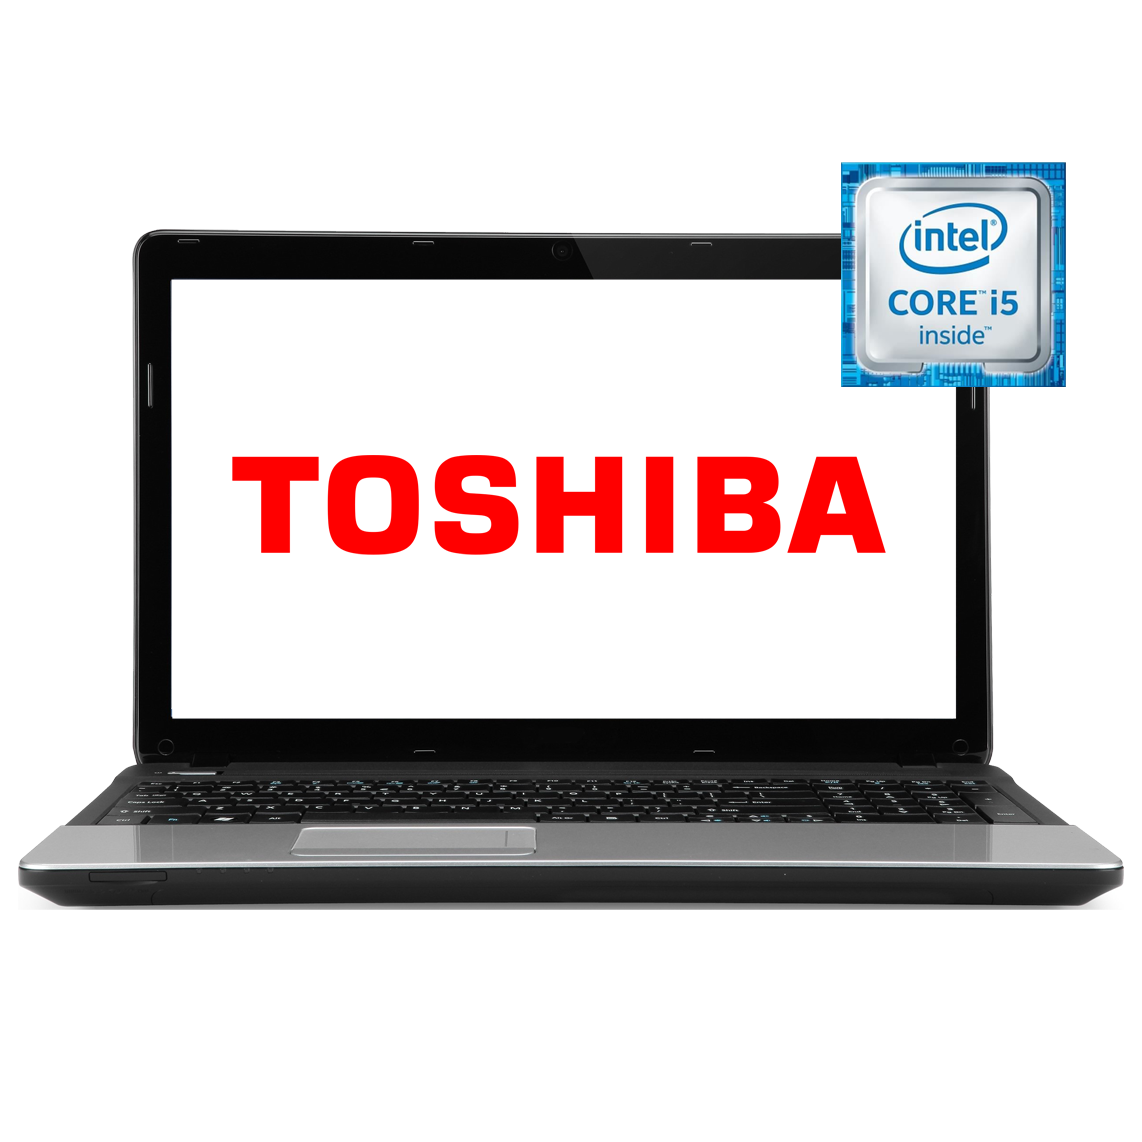 Toshiba - 17.3 inch Core i5 4th Gen